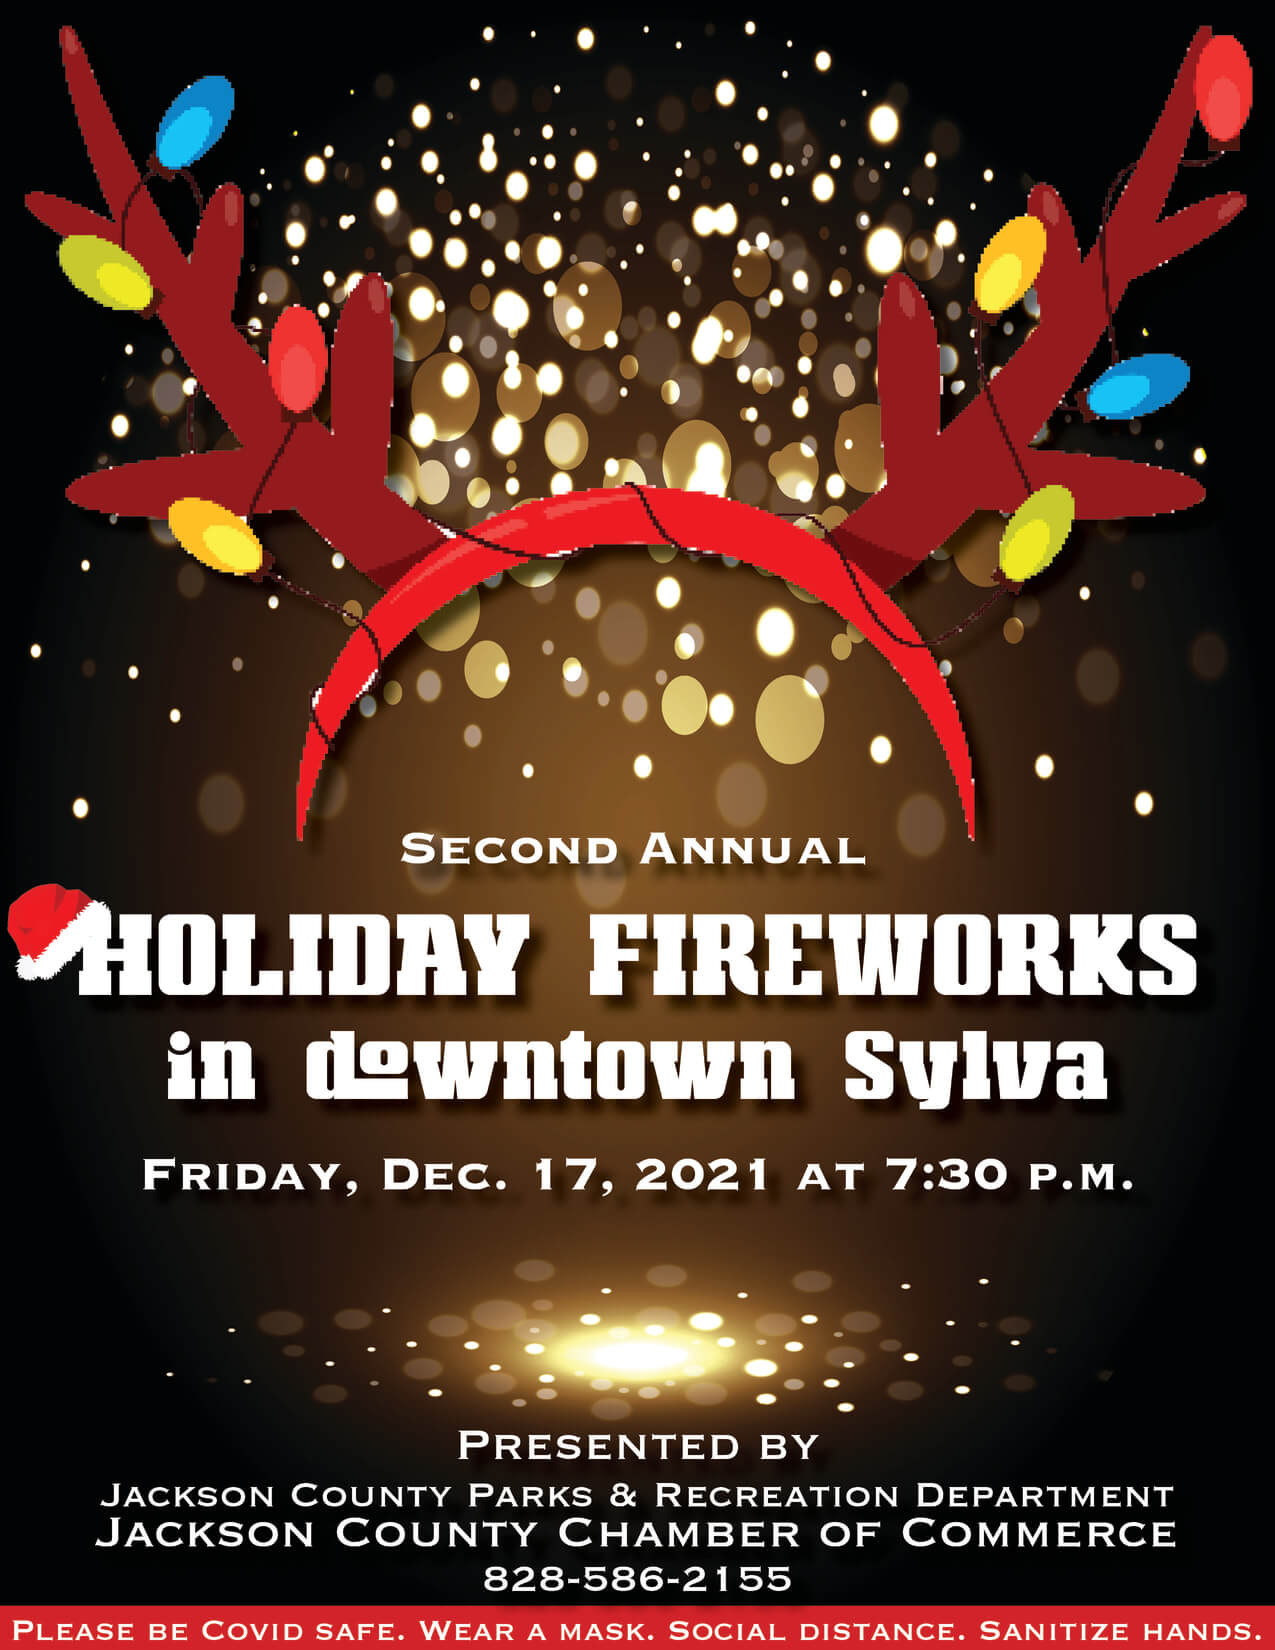 HolidayFireworks2021-w1275